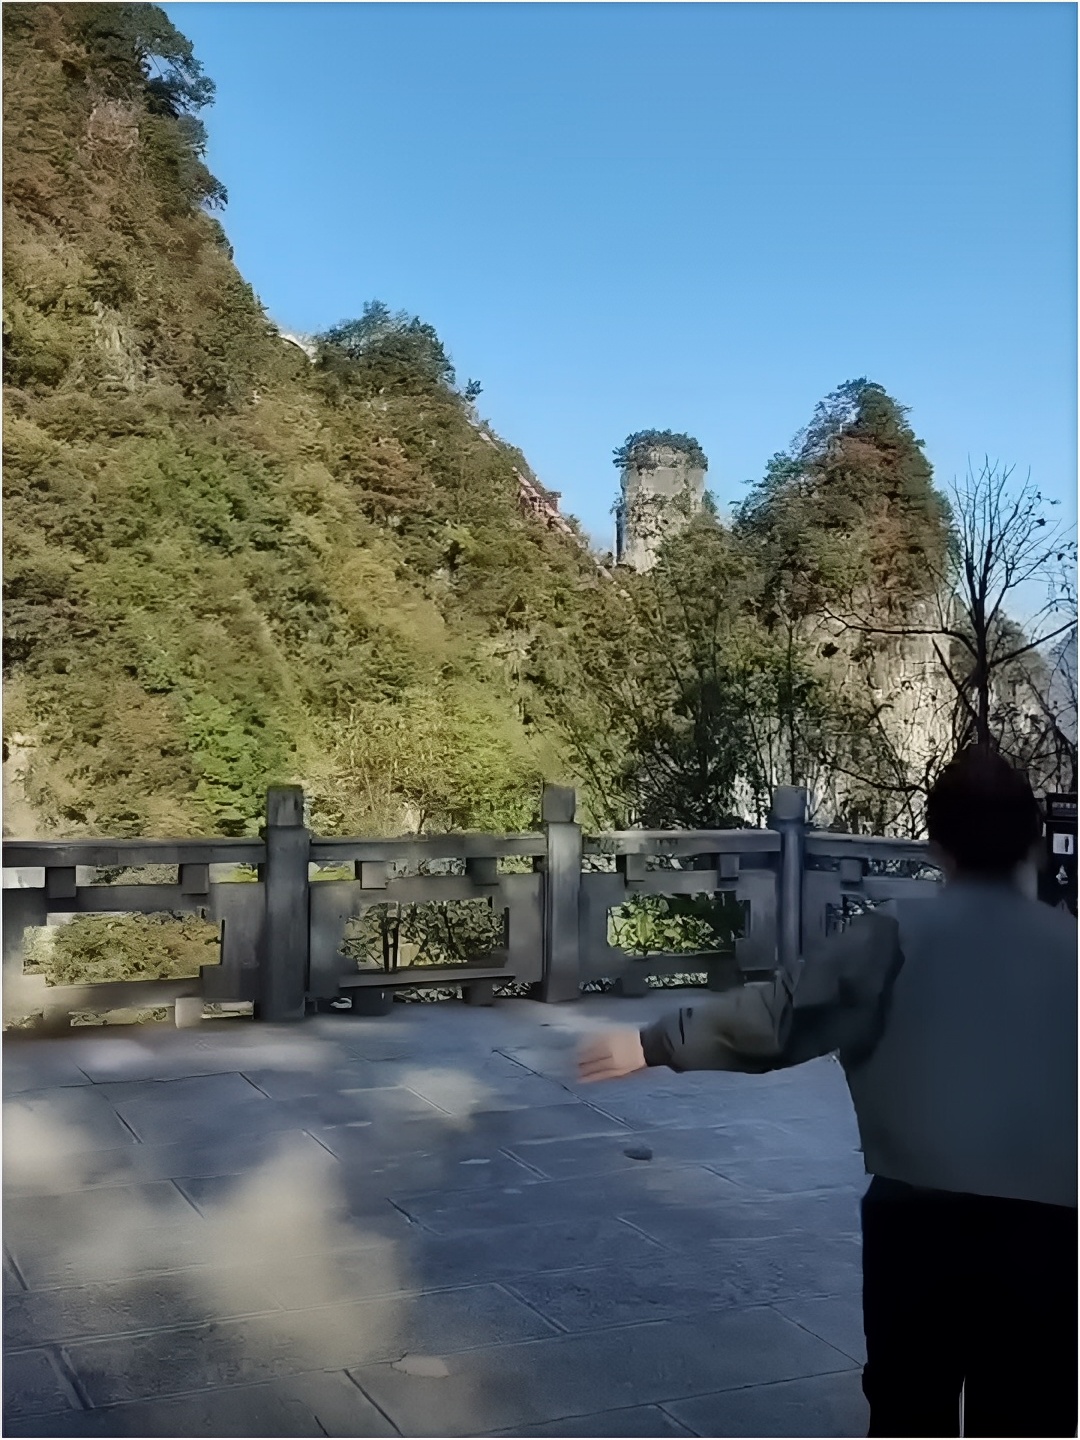 探秘柴埠溪大峡谷:壮美自然奇观引人入胜柴埠溪大峡谷，位于湖北省宜昌市境内，是一处让人心驰神往的自然奇